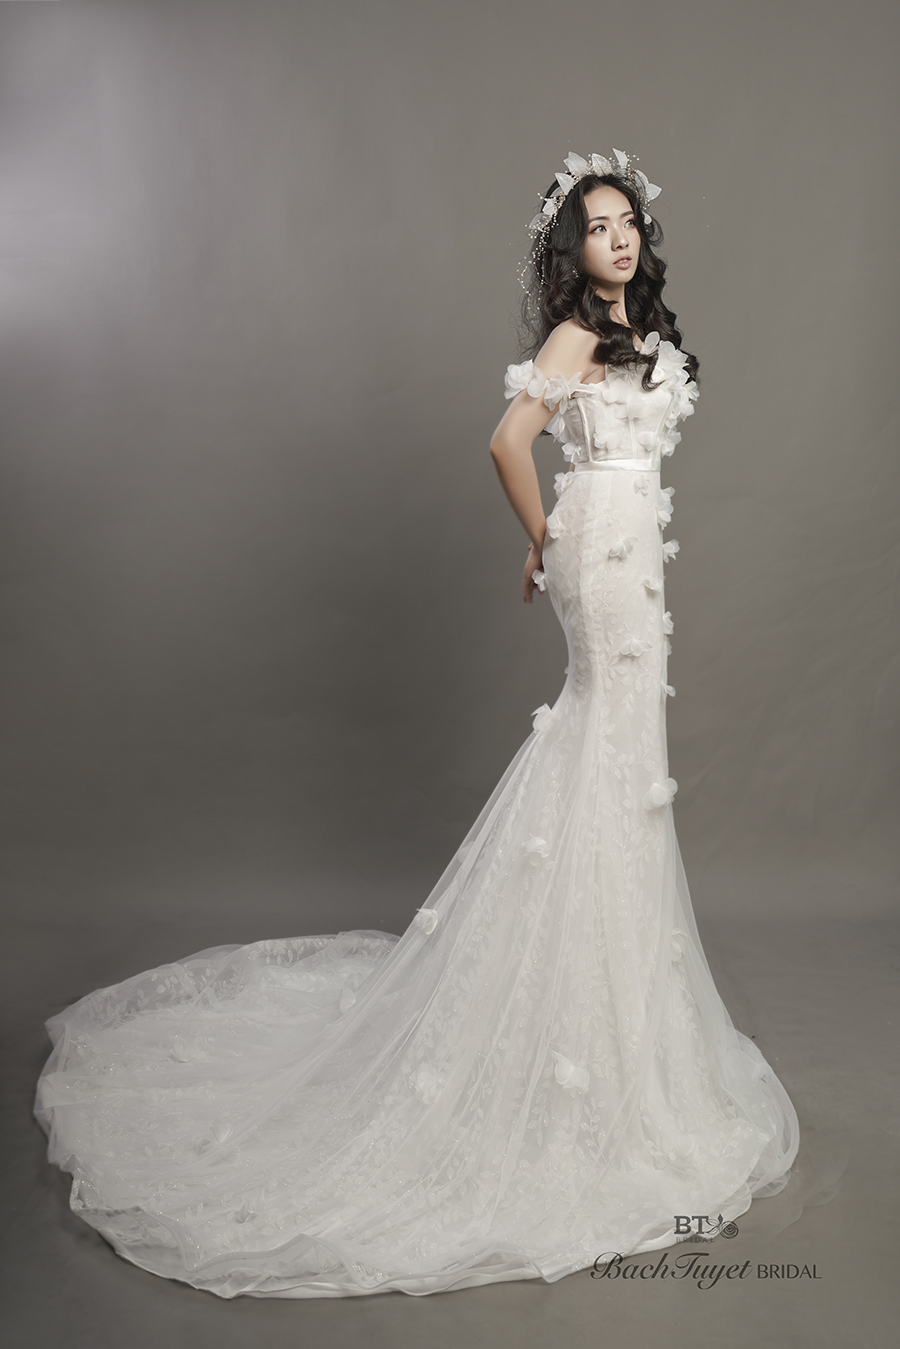 Nhà thiết kế hé lộ chi tiết đặc biệt váy cưới cô dâu trăm tỷ - 2sao